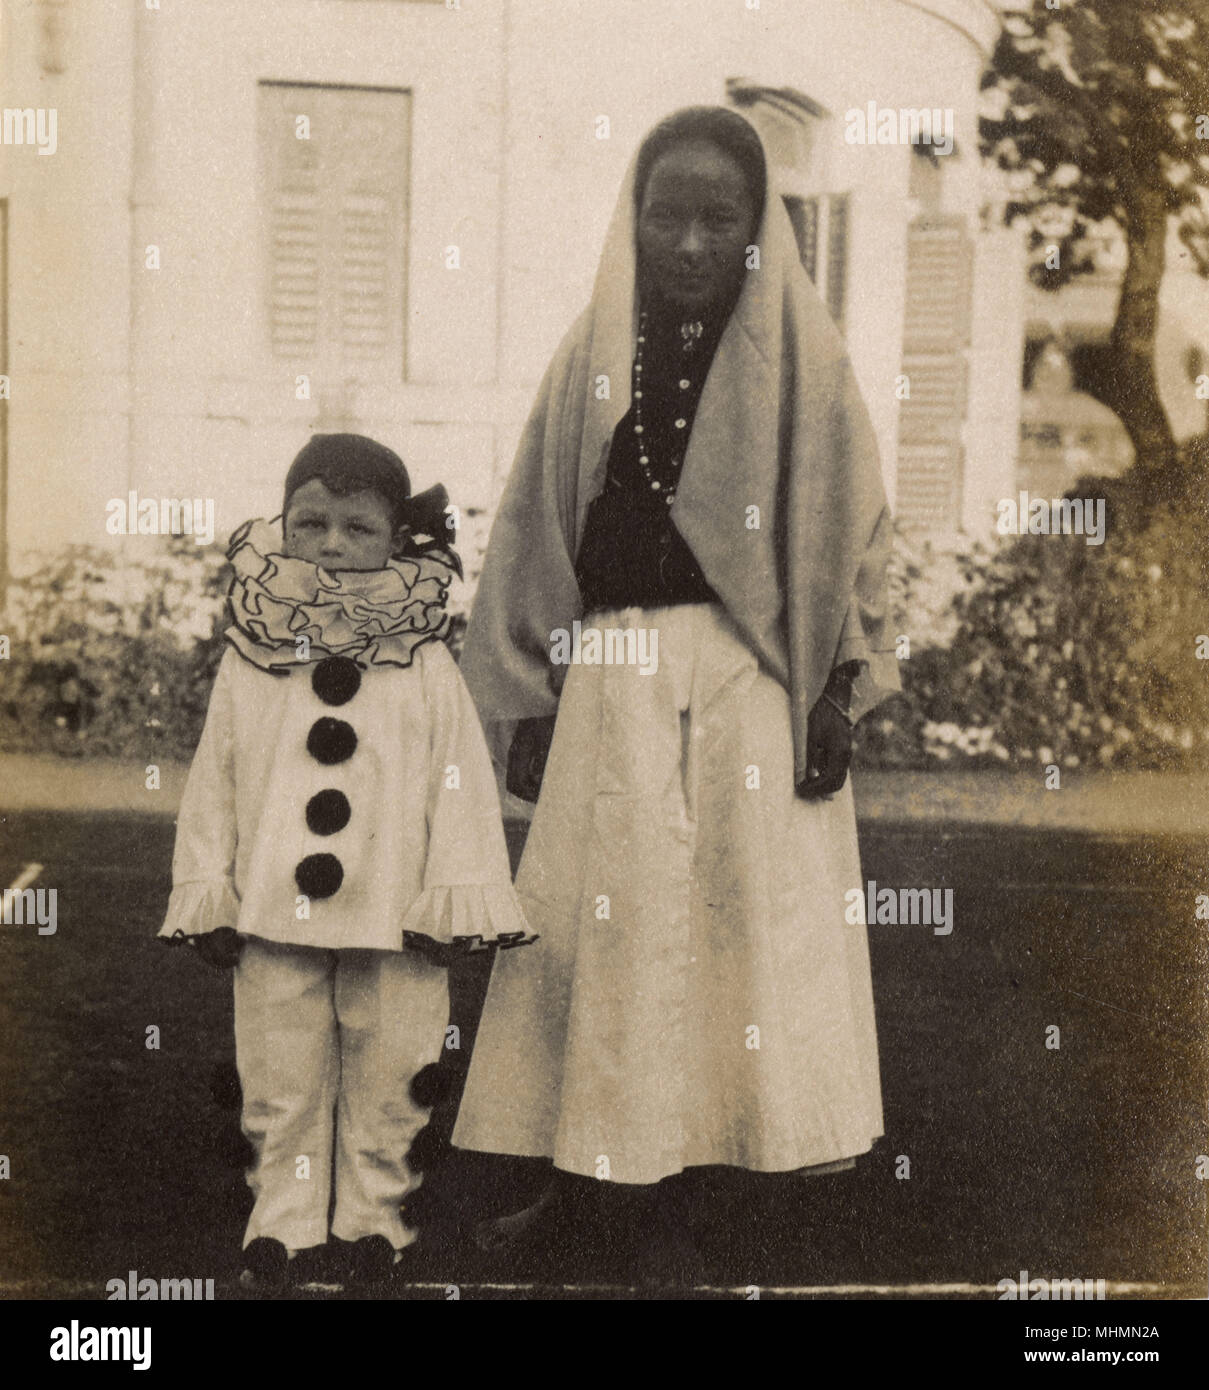 Ein kleiner Junge, gekleidet in einen Clown Kostüm für eine Party. Er scheint durch seine Krankenschwester oder Ayah - das Foto sieht auf dem indischen Sub - Kontinent ergriffen werden begleitet werden. Datum: 1920 s Stockfoto